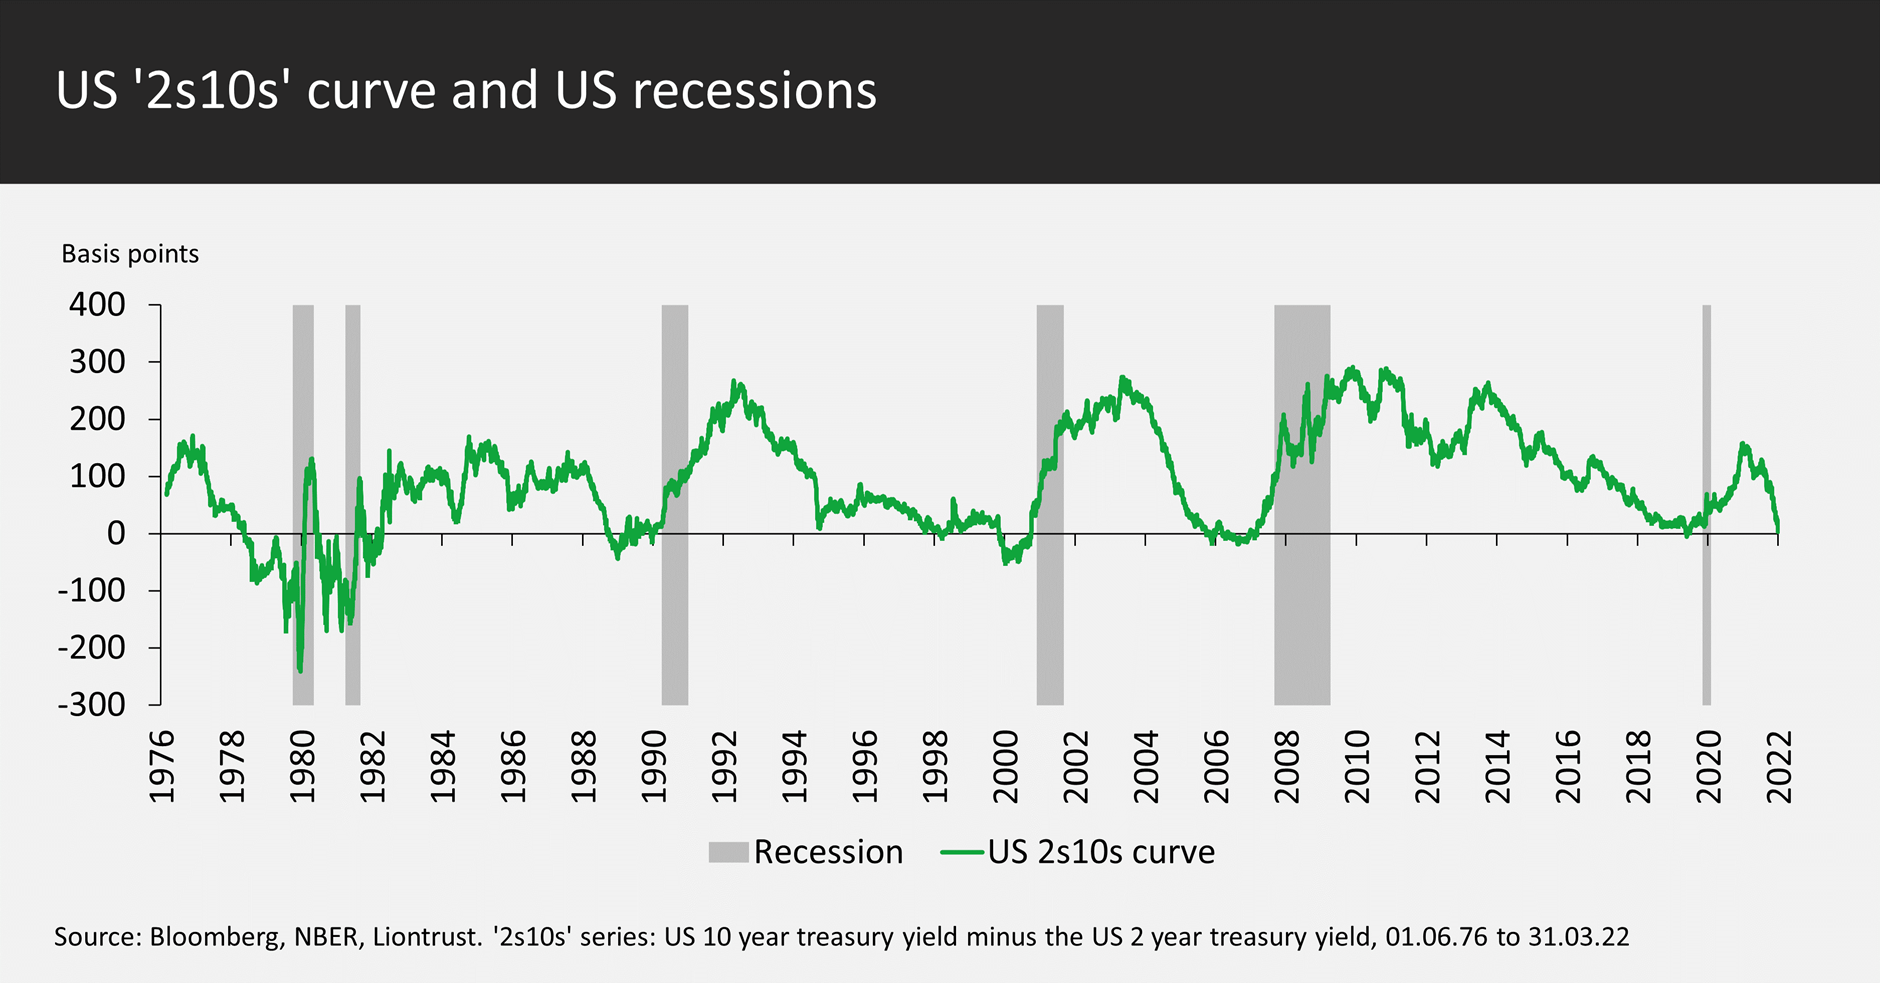 US recessions